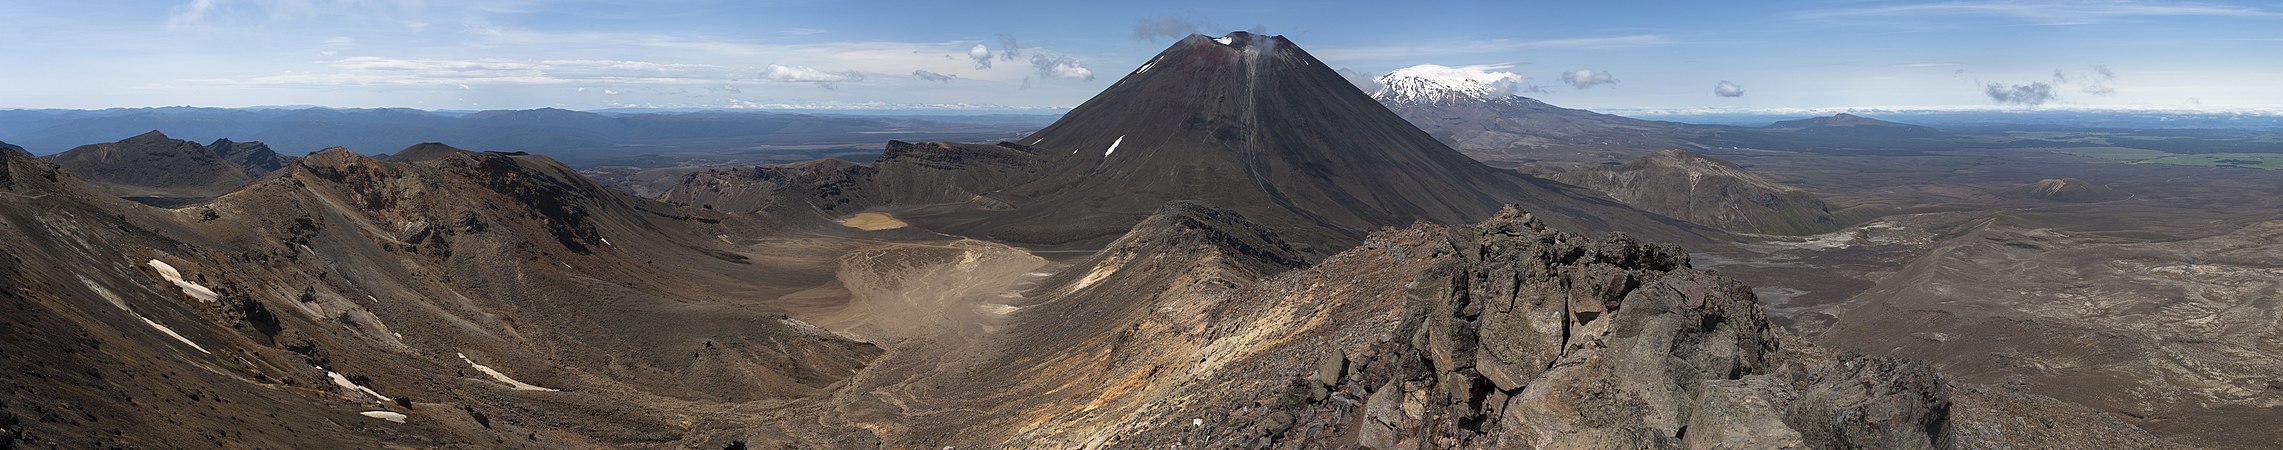 Mount Ngauruhoe, by KennyOMG